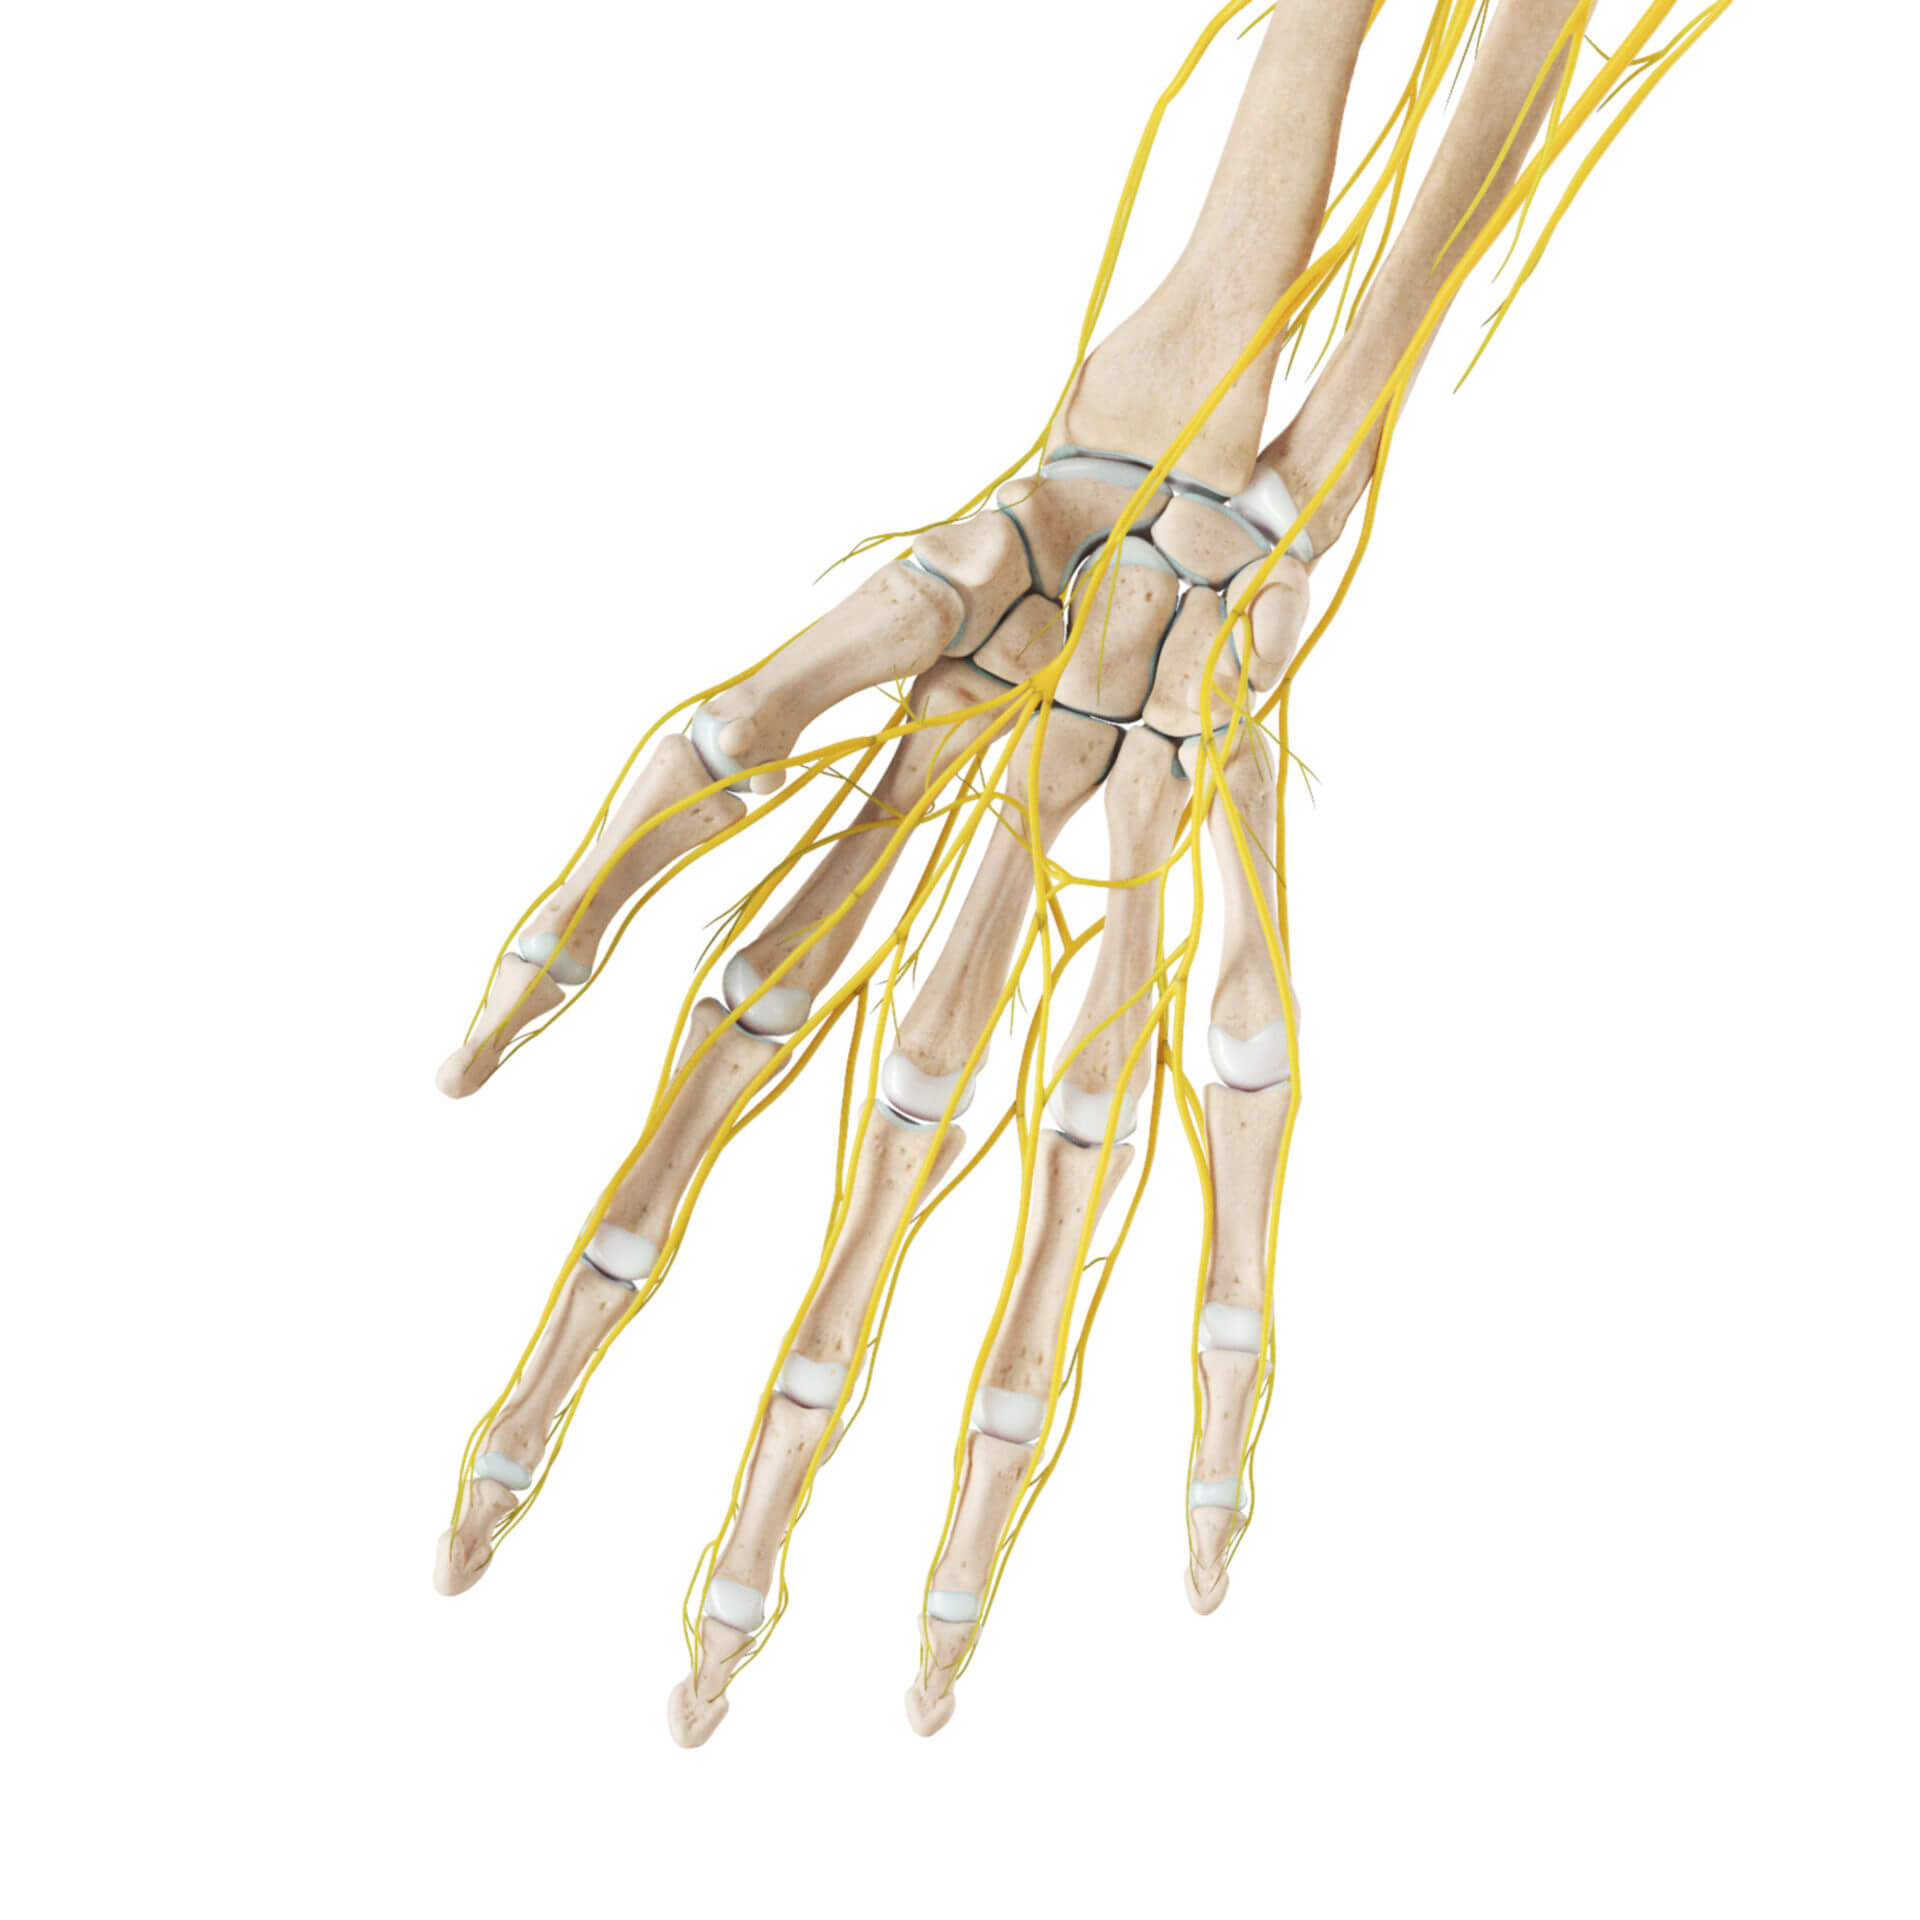 Skelett und Nerven der Hand (palmar)